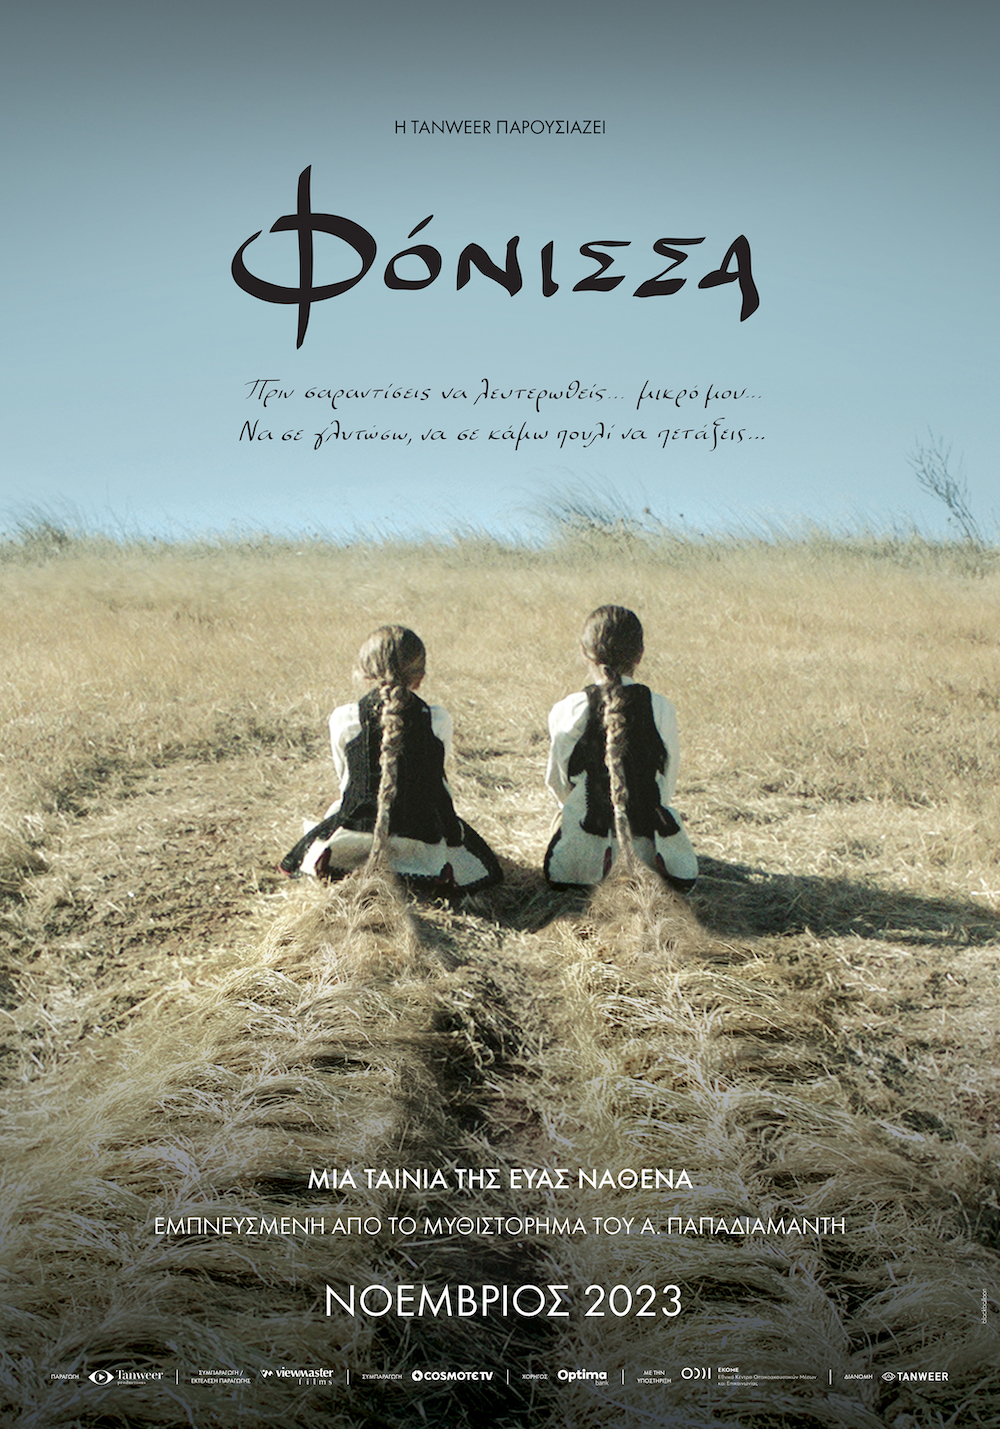 You are currently viewing Κωνσταντίνος Μπούρας: Η κινηματογραφικώς παρά-μετά-ποιημένη «Φόνισσα» που μακρινή μόνον συγγενική σχέση (εξ αγχιστείας) έχει με το αριστούργημα τού Παπαδιαμάντη.